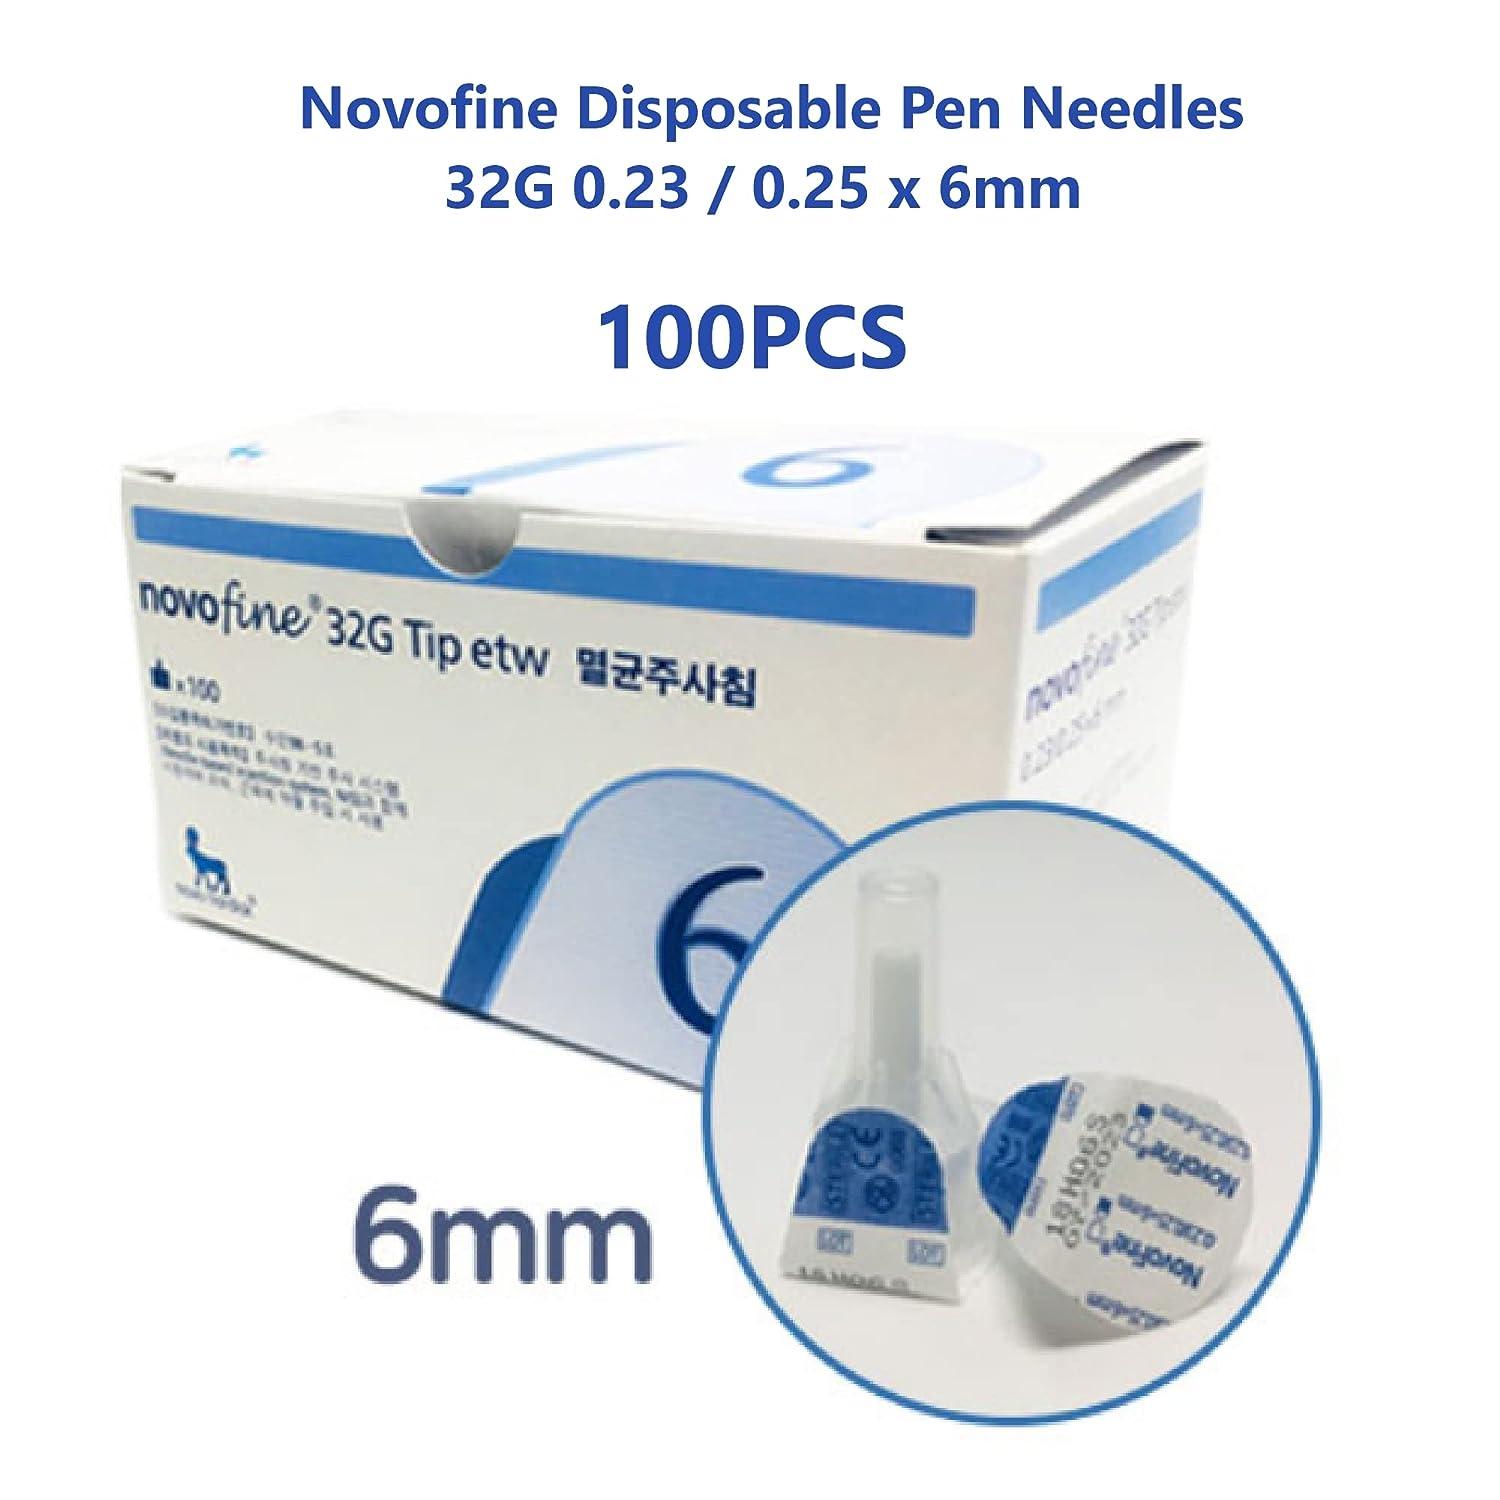 NovoFine 32G 6mm - Freepharmastore